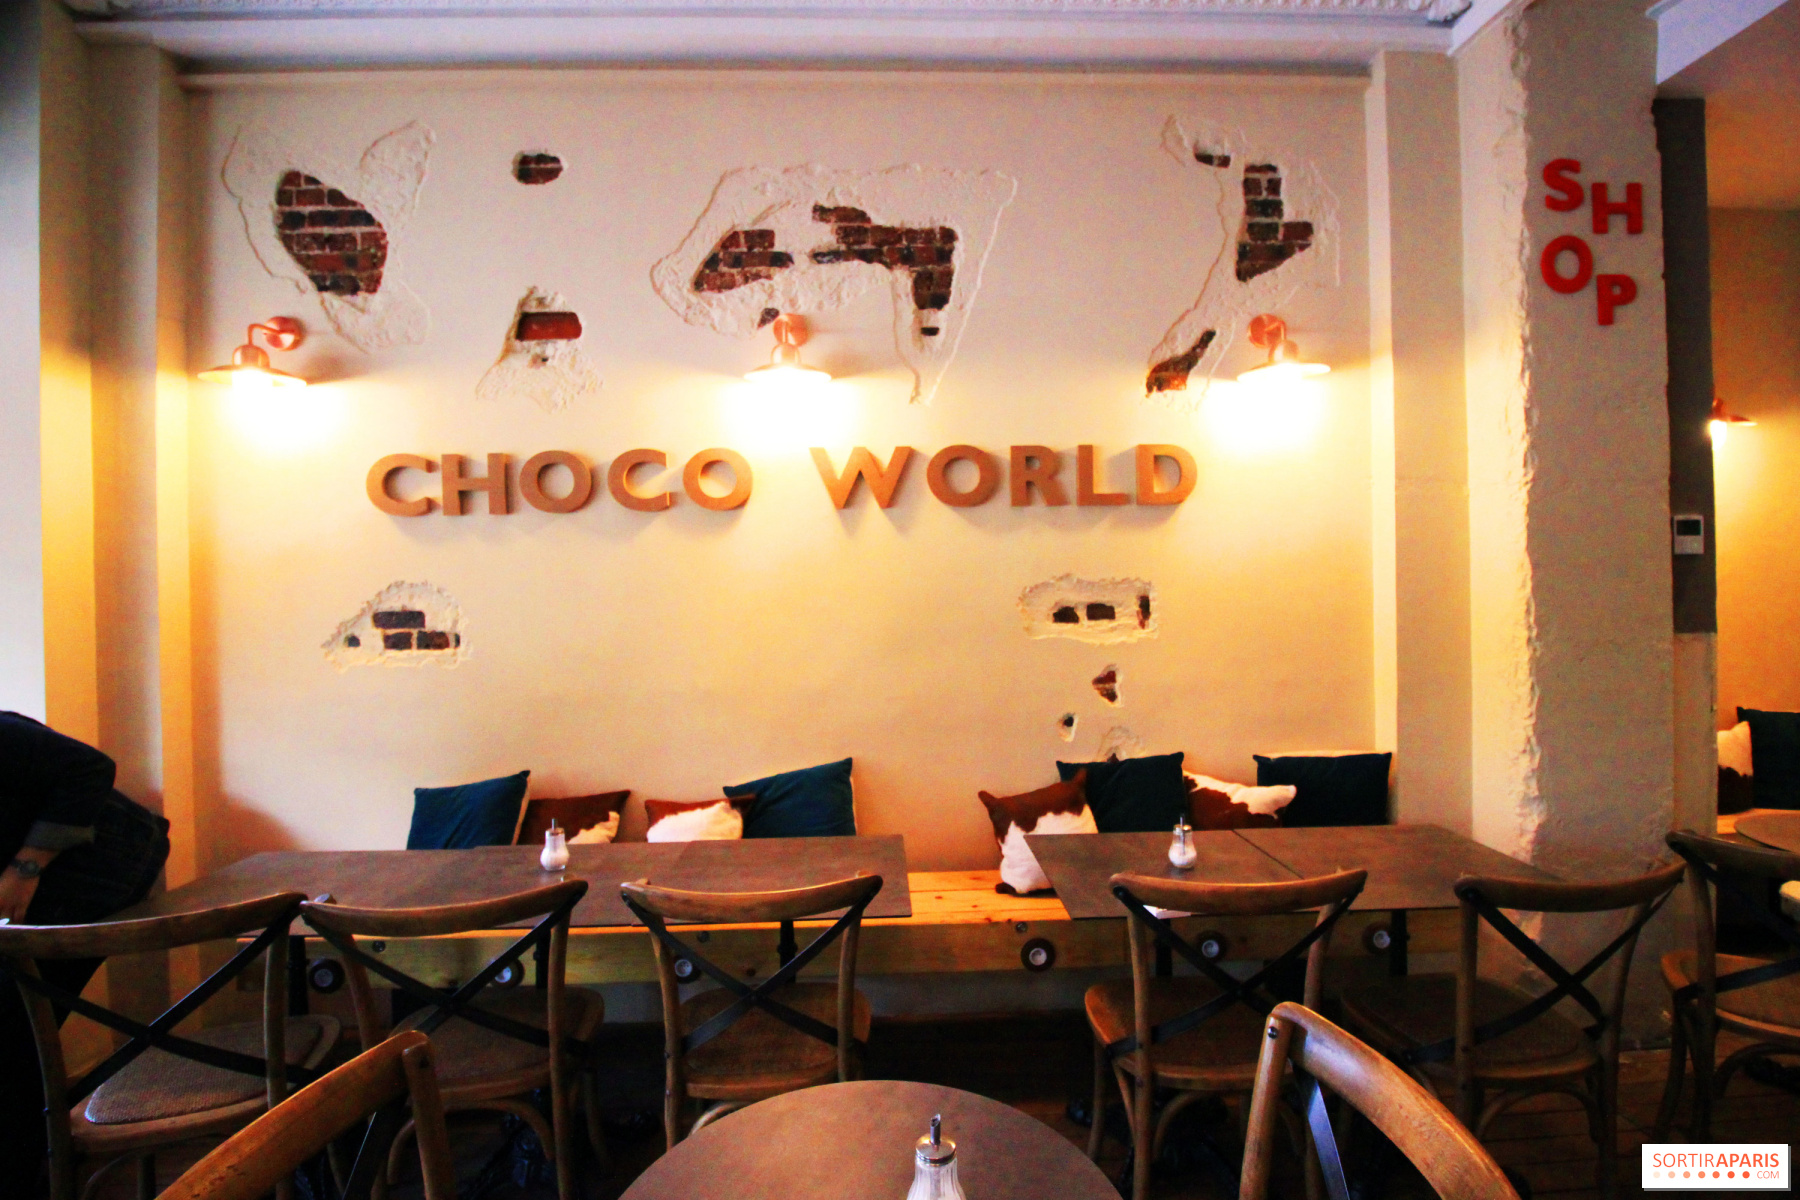 Choco Factory aka choco-addicts’ paradise in Paris - Sortiraparis.com